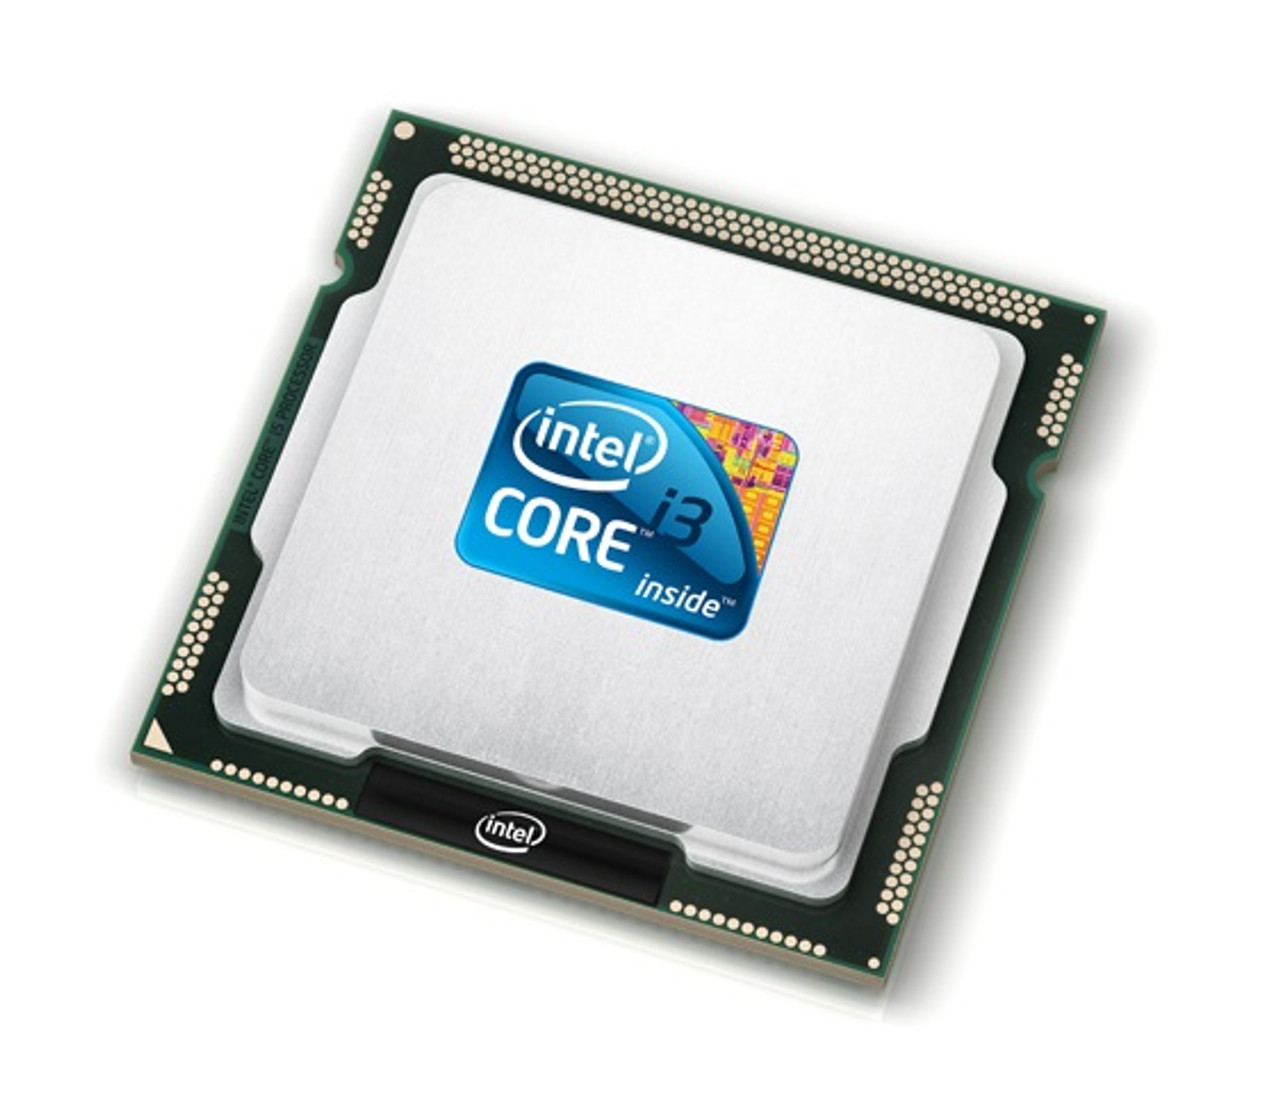 SR1DC - Intel Core i3-4020Y Dual Core 1.50GHz 5.00GT/s DMI2 3MB L3 Cache Socket FCBGA1168 Mobile Processor